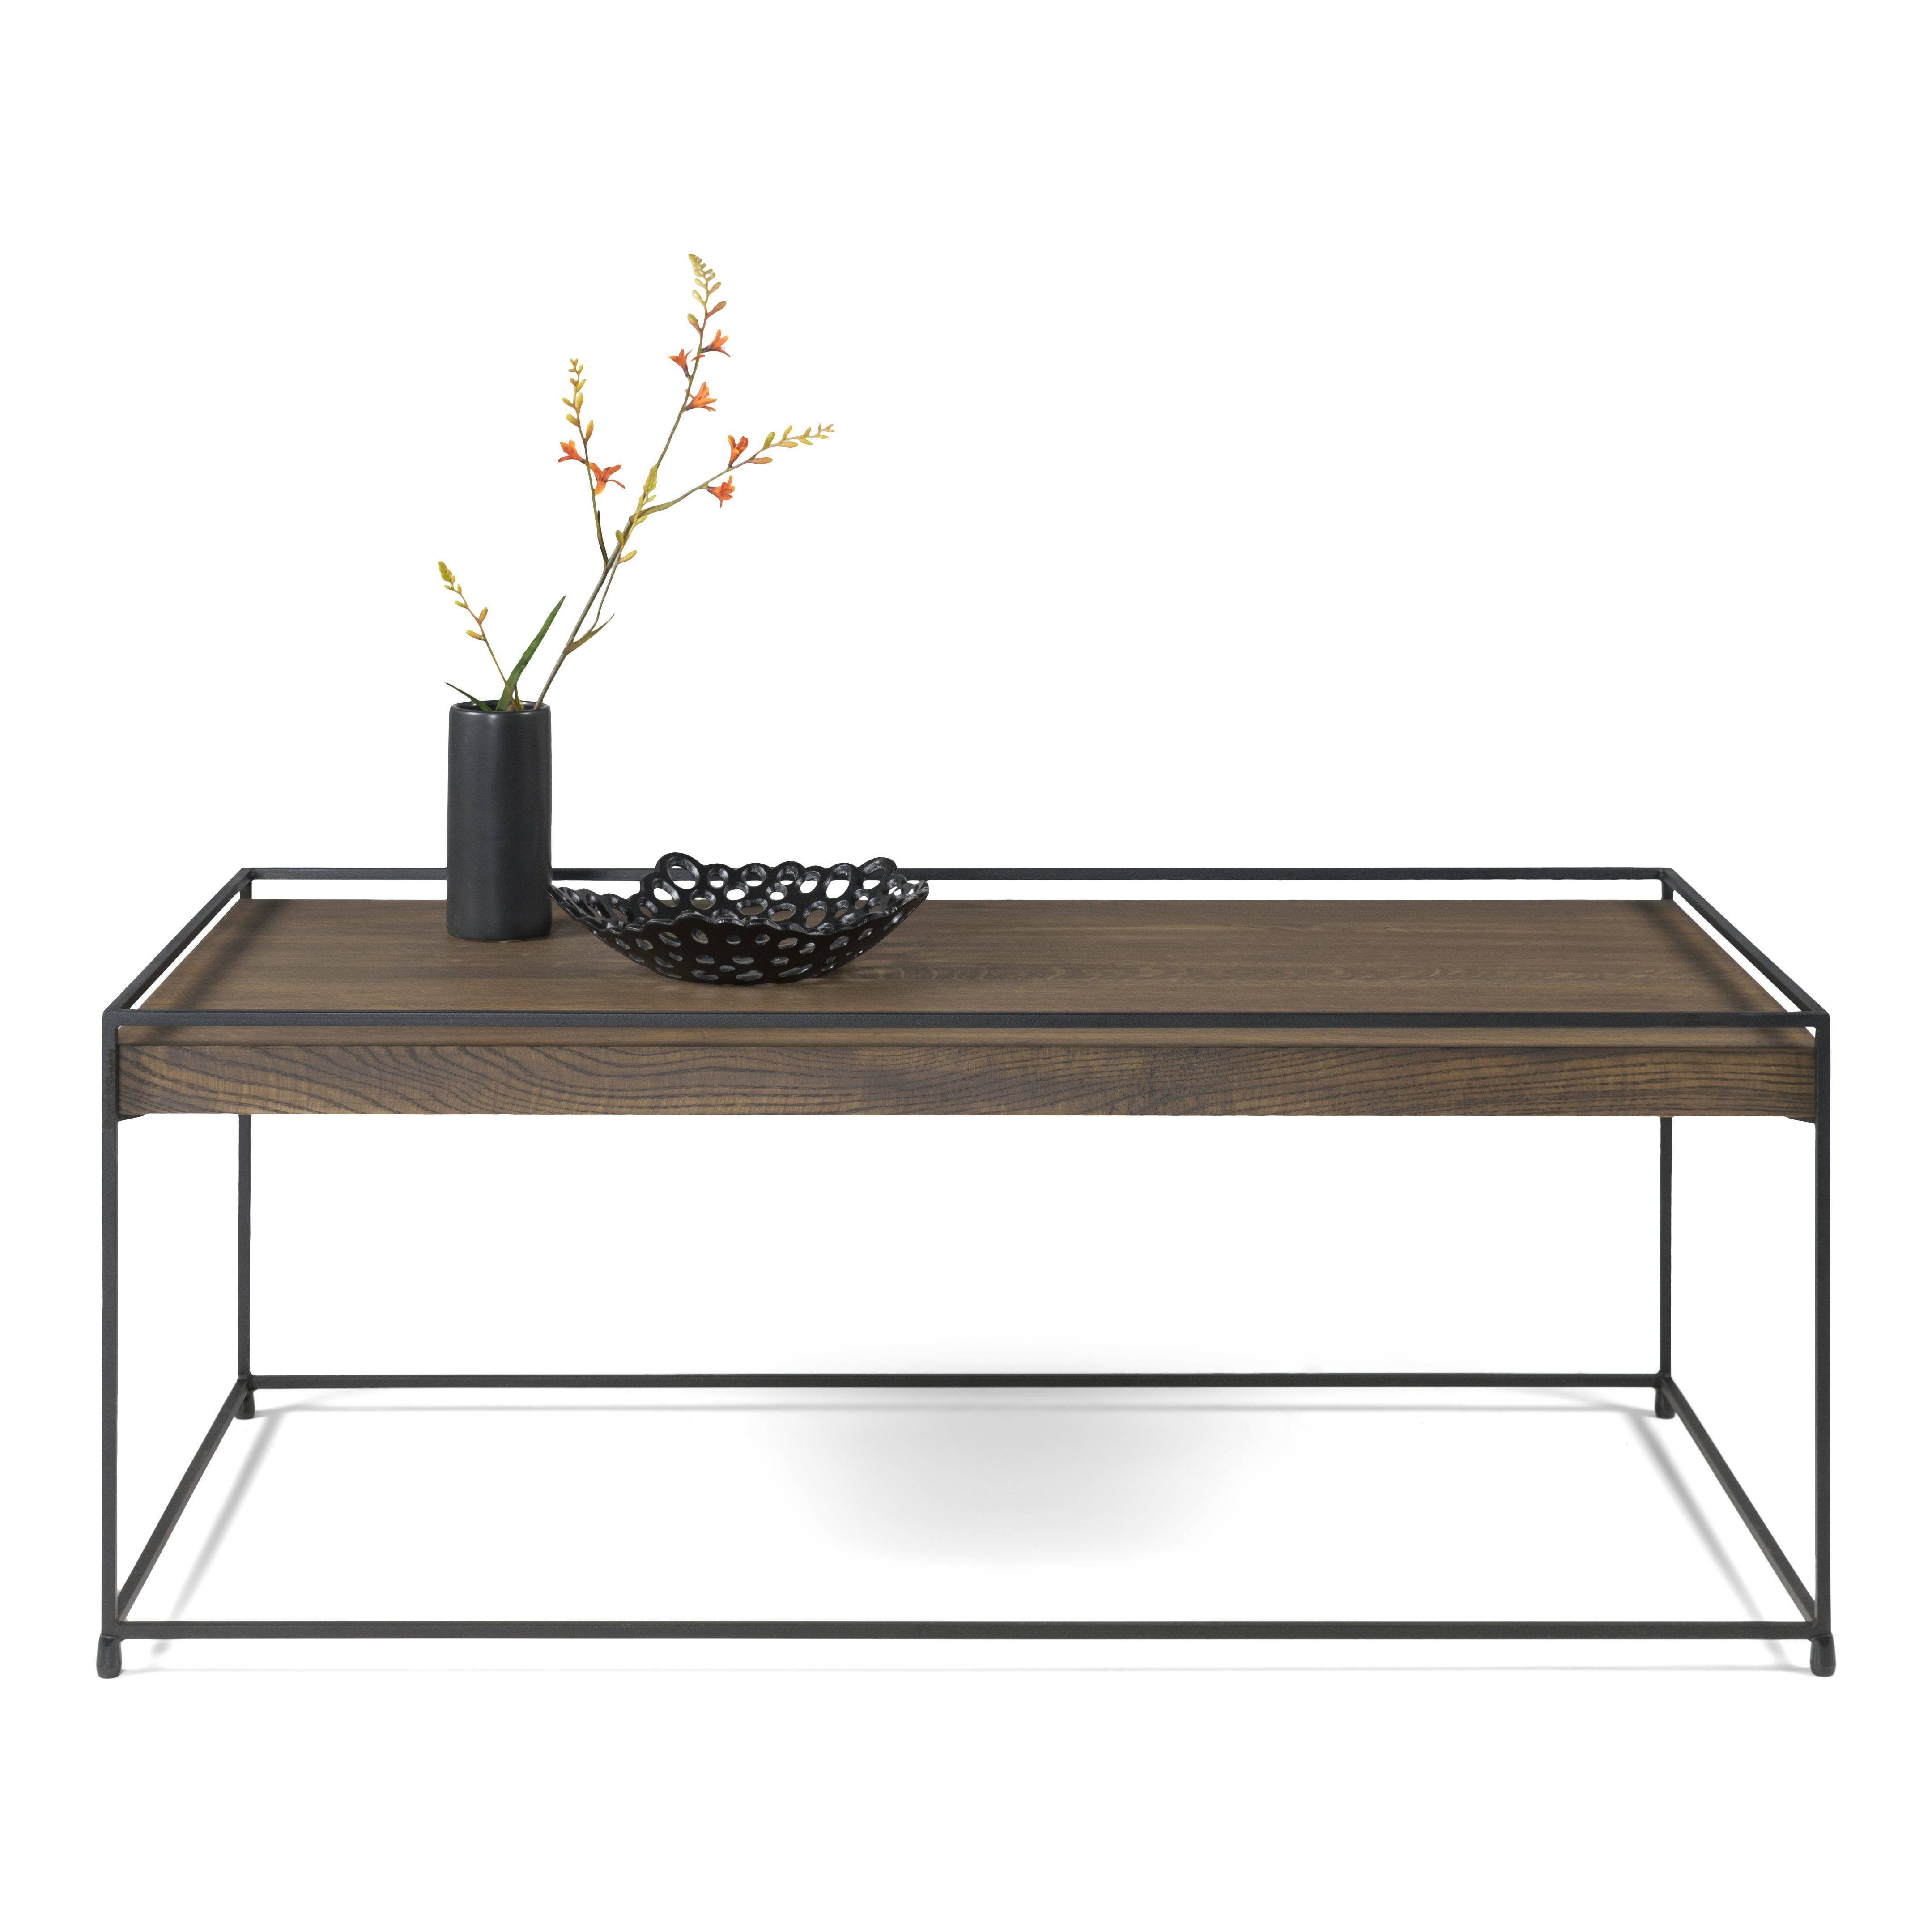 Furniture - Beistelltisch Beistelltisch 120 120x46x60cm Design THIN Torna WALNUT Torna Schwarz WOOD